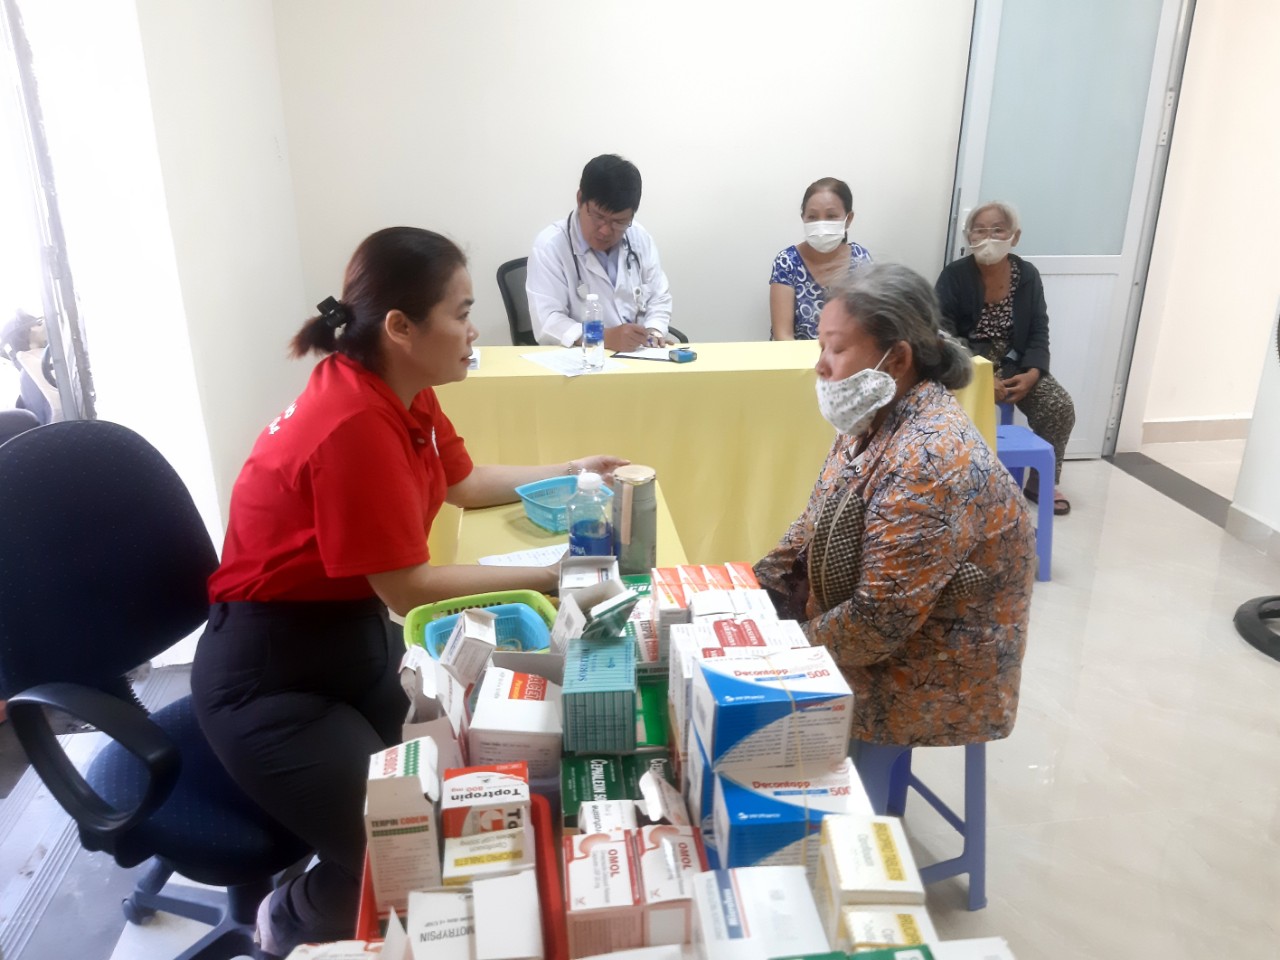 Hội Chữ thập đỏ tỉnh Bà Rịa - Vũng Tàu tổ chức “Chợ Nhân đạo” tại Bưu điện tỉnh Bà Rịa - Vũng Tàu - Ảnh 3.